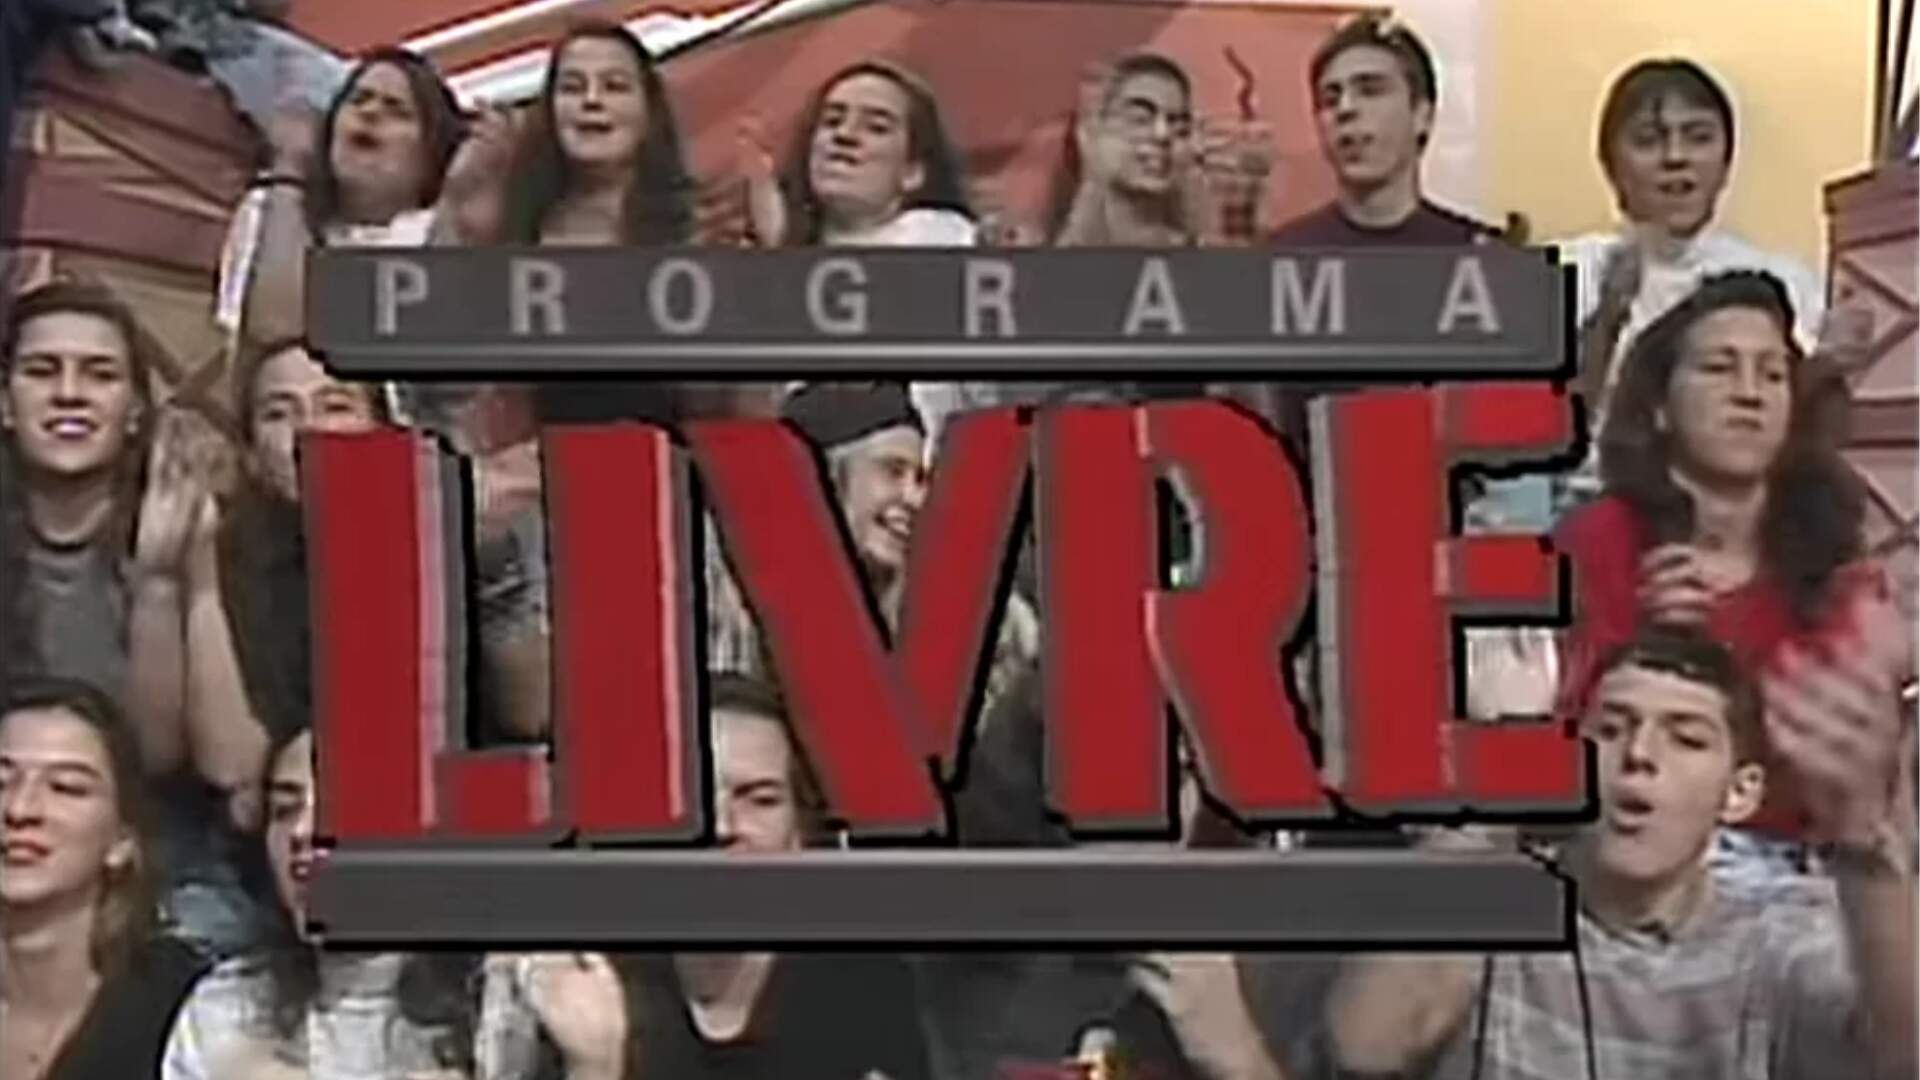 Sucesso da década de 1990 volta pra televisão após briga entre emissoras - Metropolitana FM